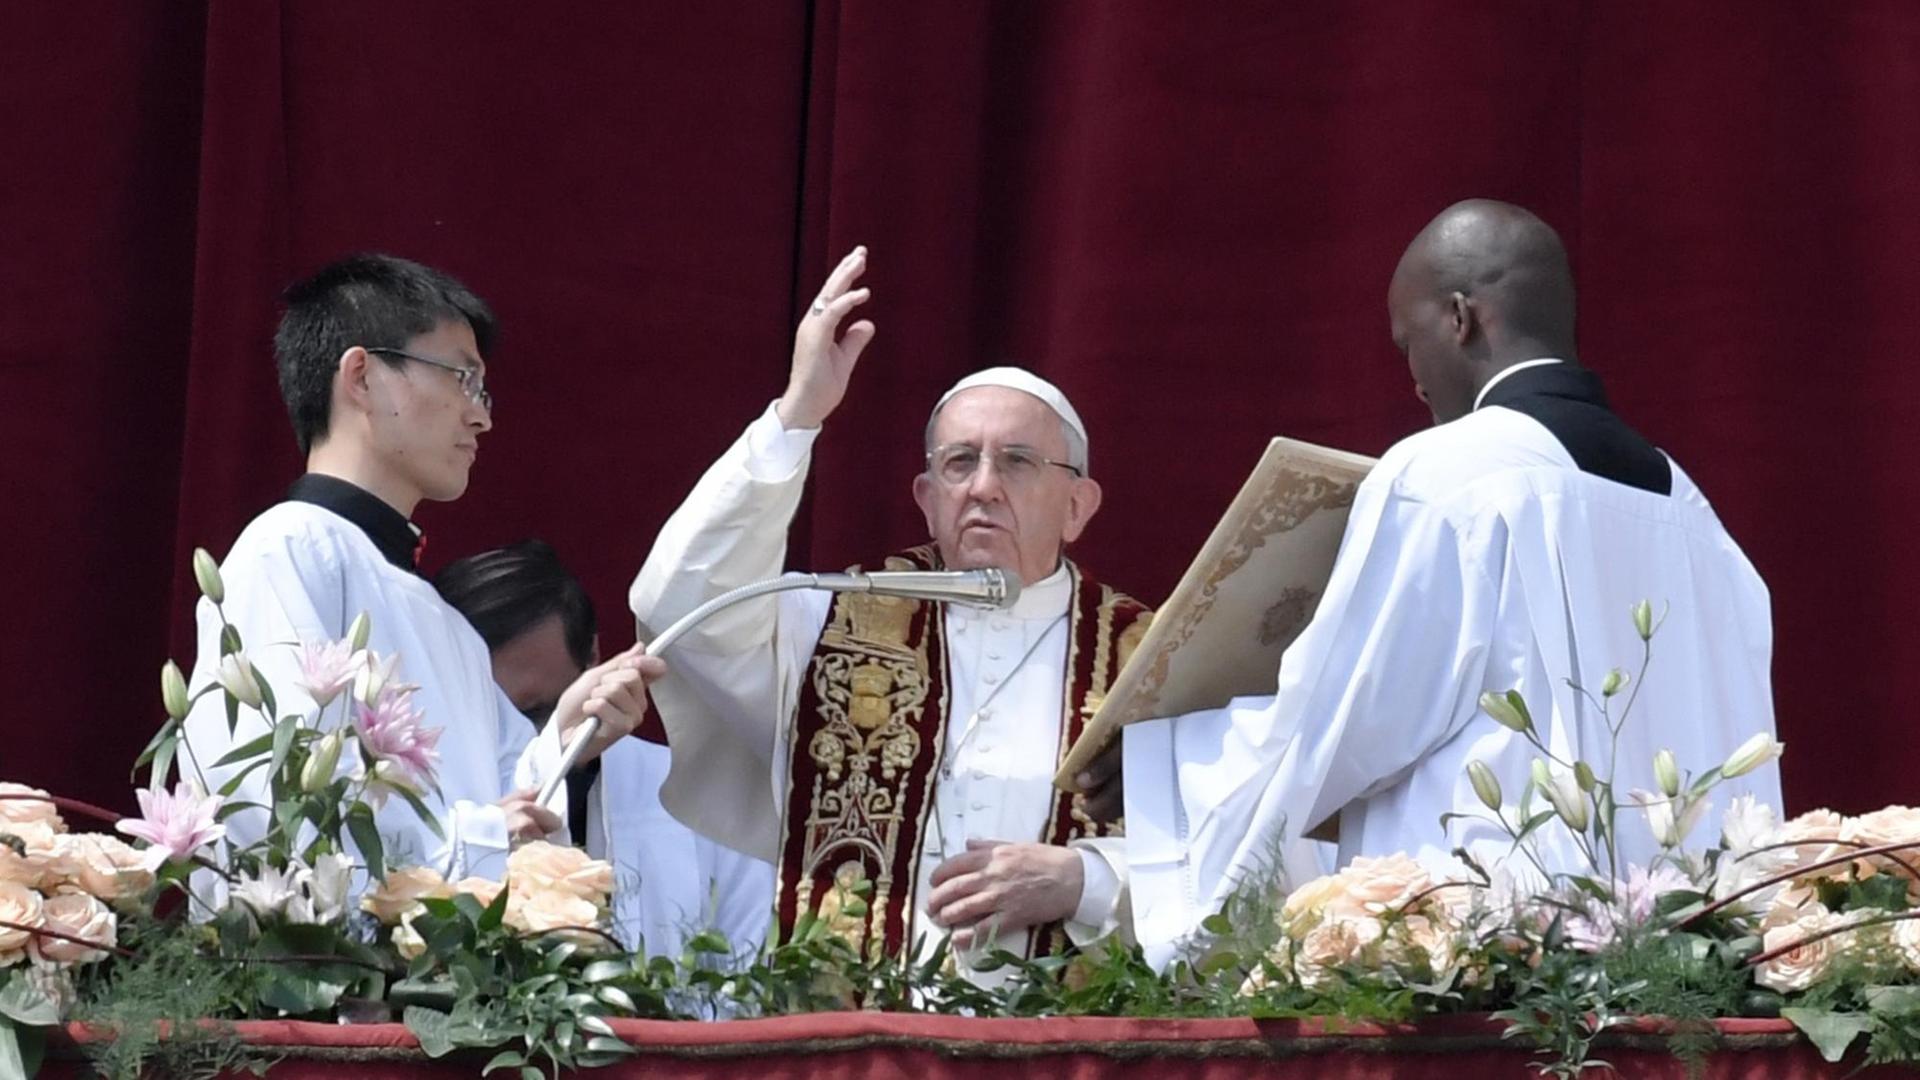 Papst Franziskus erteilt am 16.4.17 vom Balkon des Petersdoms aus den traditionellen Ostersegen "Urbi et Orbi".